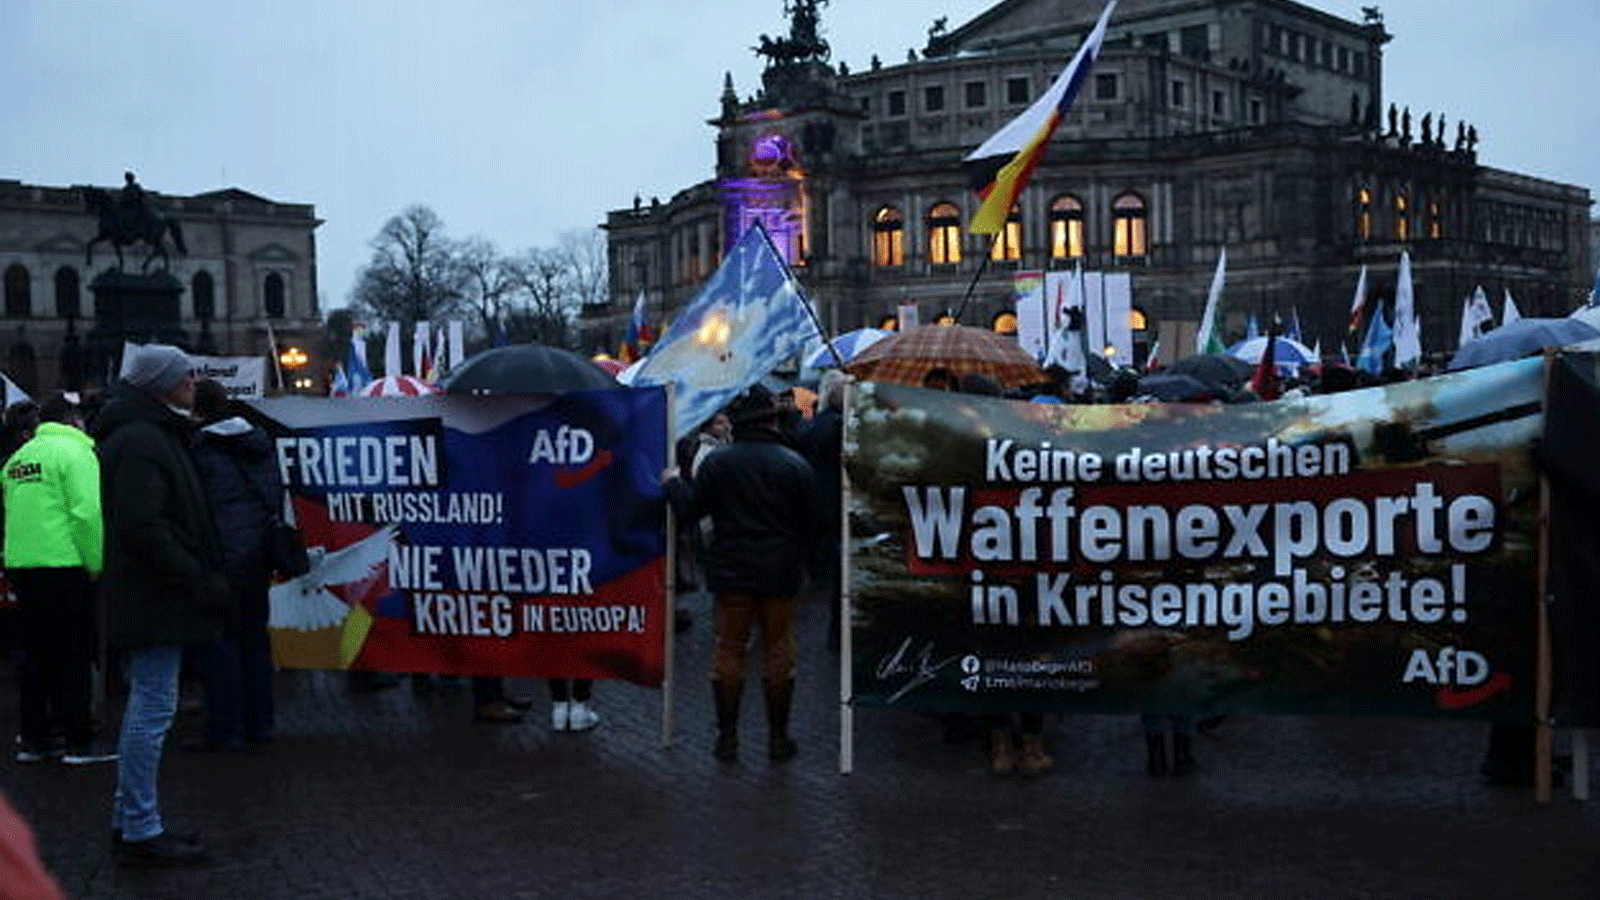 أشخاص يحضرون مسيرة لحزب البديل اليميني من أجل ألمانيا (AfD) بمناسبة الذكرى السنوية الأولى للغزو الروسي لأوكرانيا في دريسدن، شرق ألمانيا، في 24 فبراير(شباط) 2023